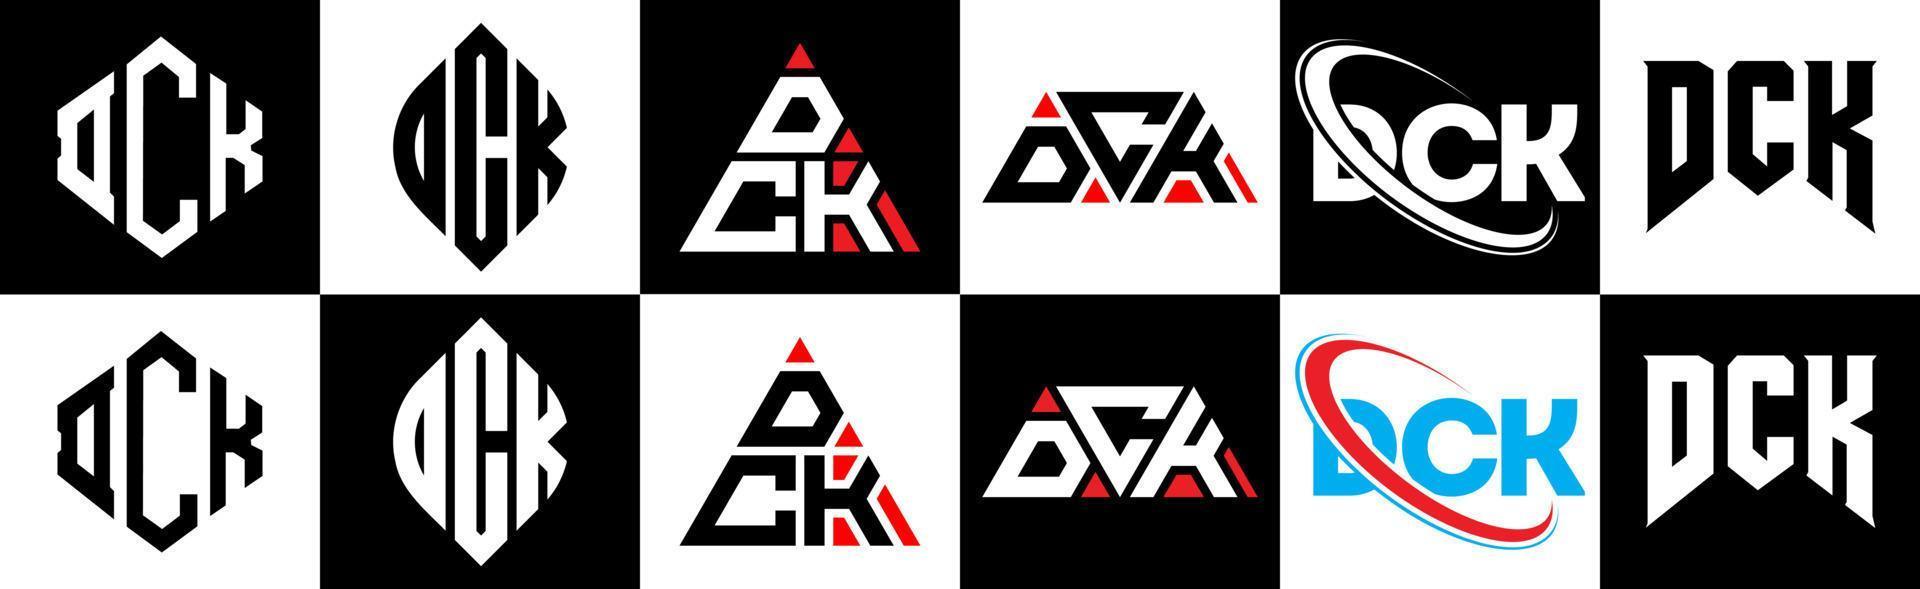 création de logo de lettre dck en six styles. dck polygone, cercle, triangle, hexagone, style plat et simple avec logo de lettre de variation de couleur noir et blanc dans un plan de travail. dck logo minimaliste et classique vecteur